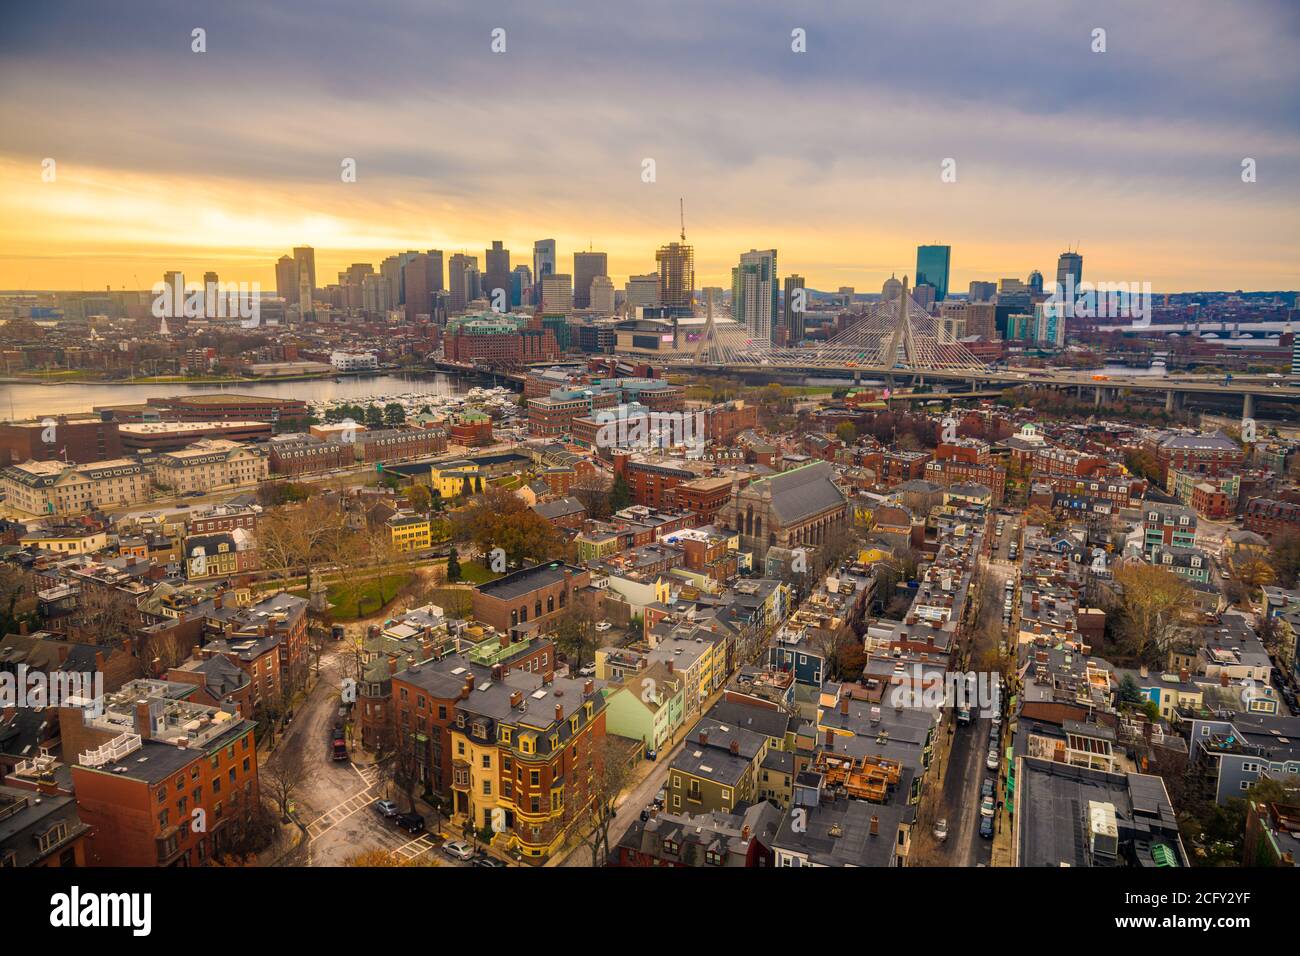 Bostom, Massachusetts, USA downtown city skyline from Bunker Hill. Stock Photo